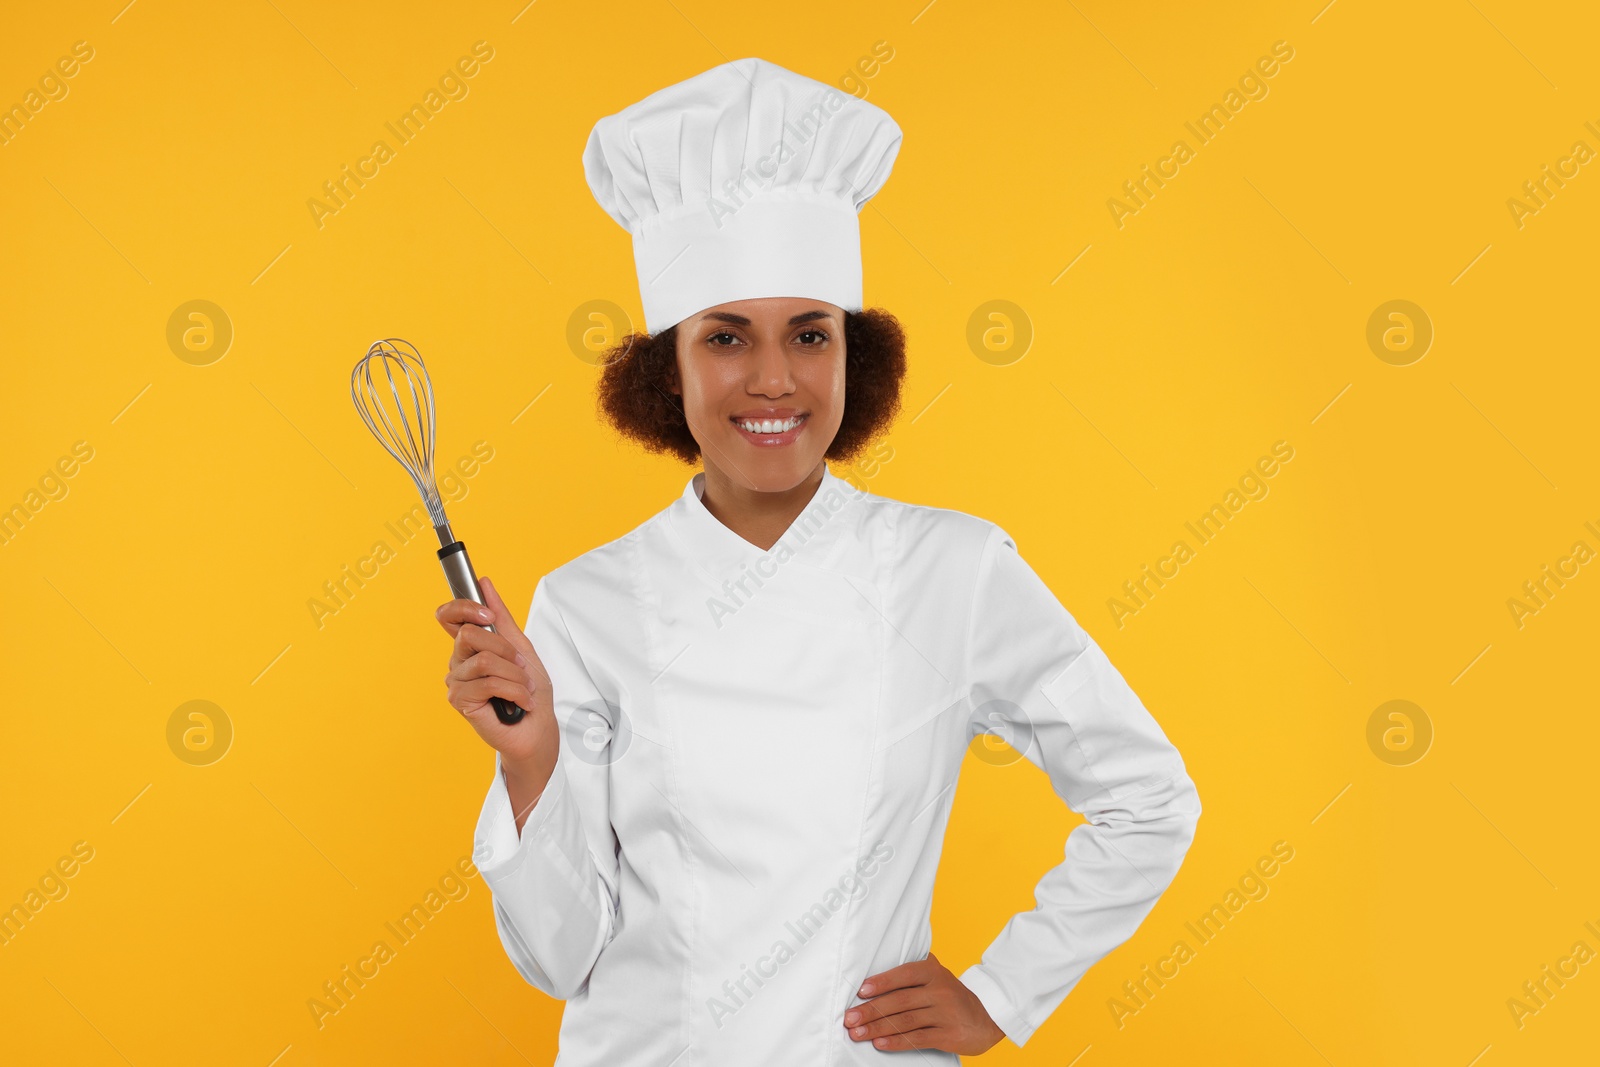 Photo of Happy female chef in uniform holding whisk on orange background